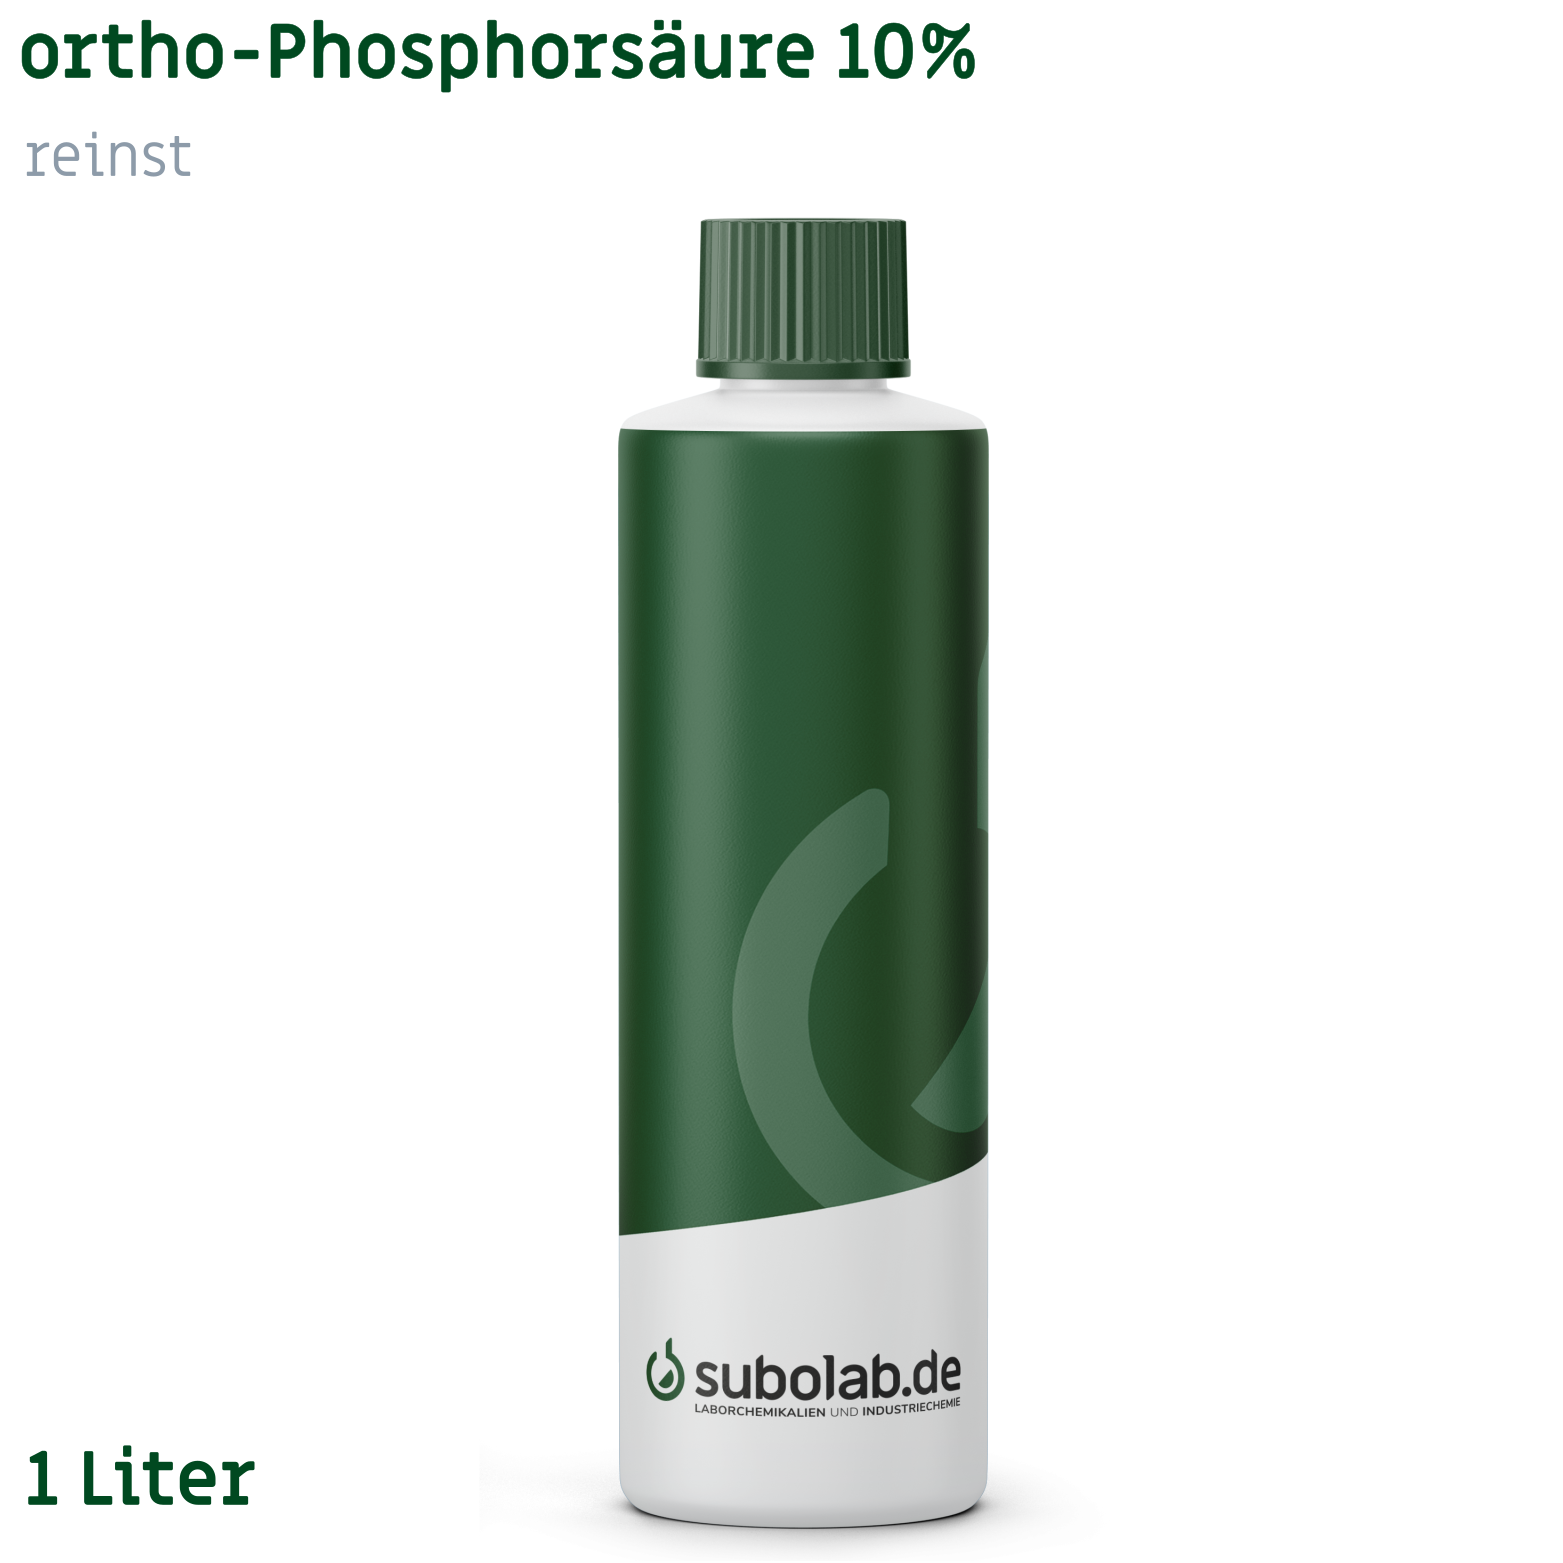 Bild von ortho-Phosphorsäure 10% reinst (1 Liter)